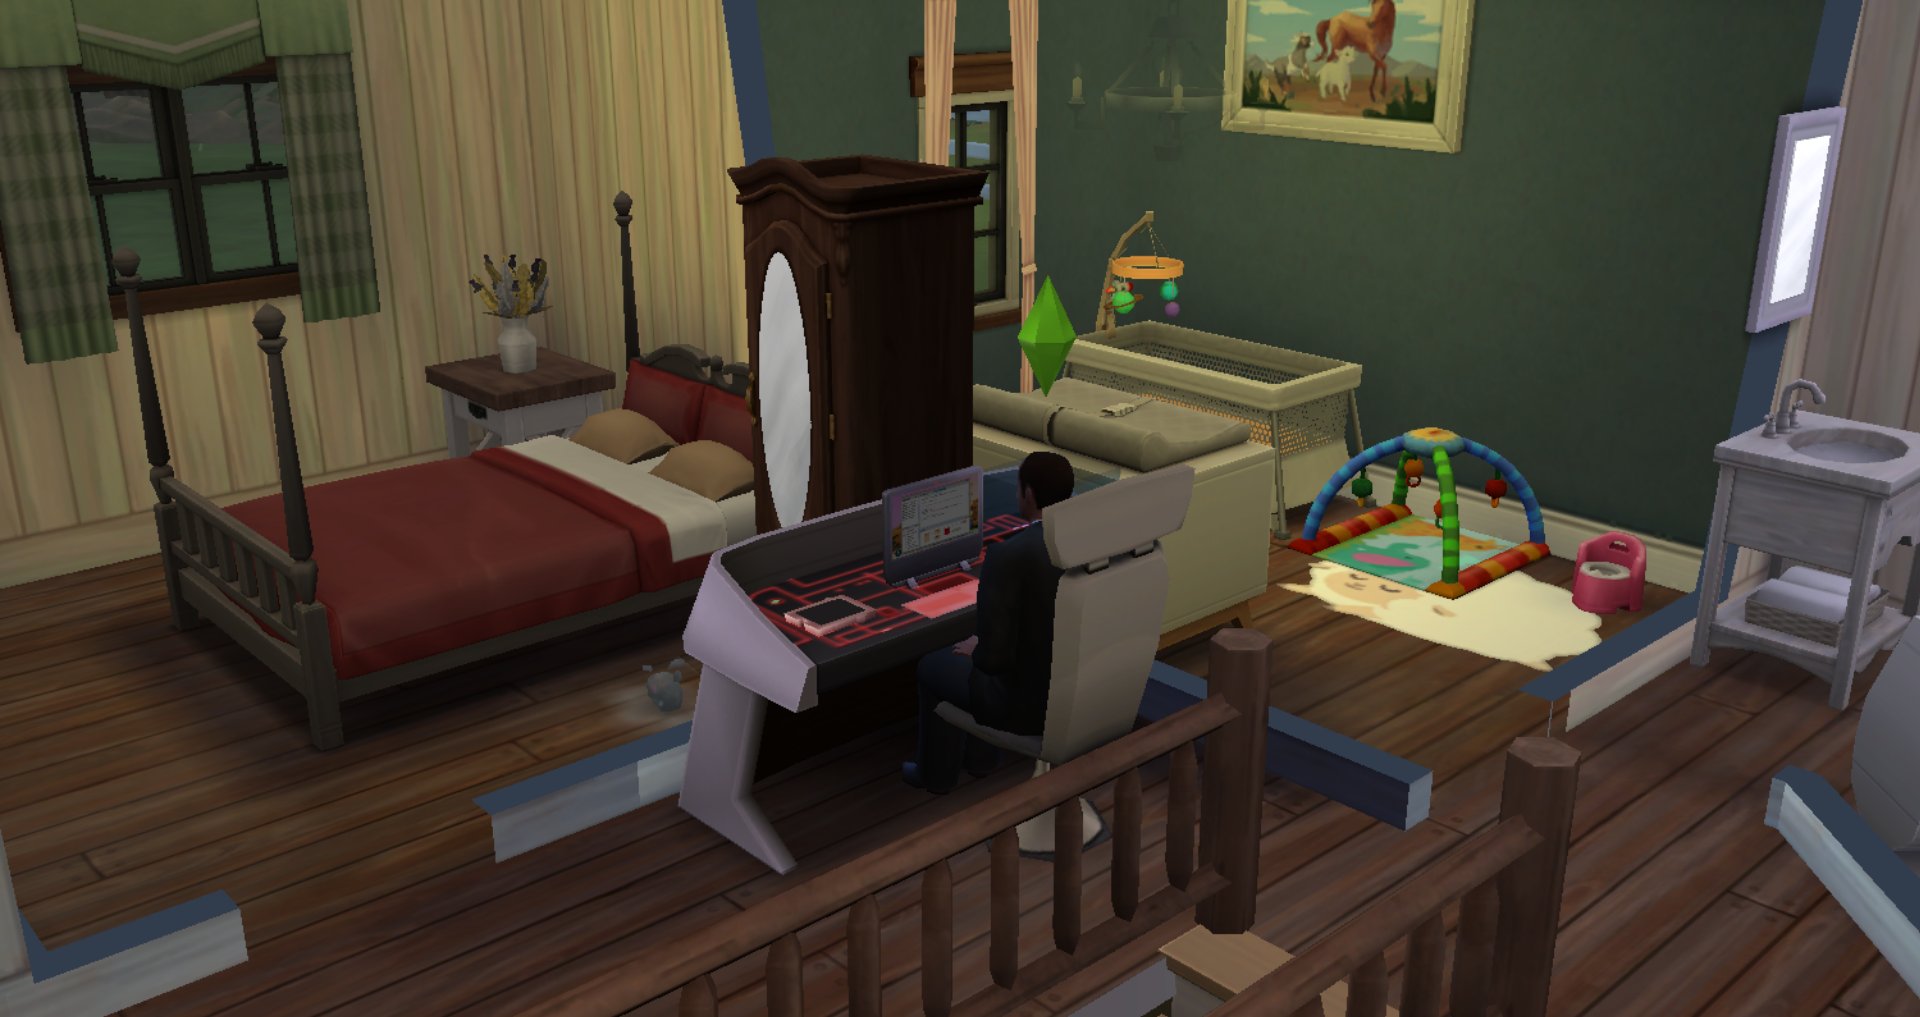 The Sims 4: ТОП-17 способов как заработать деньги, не прибегая к читам — 64  бита